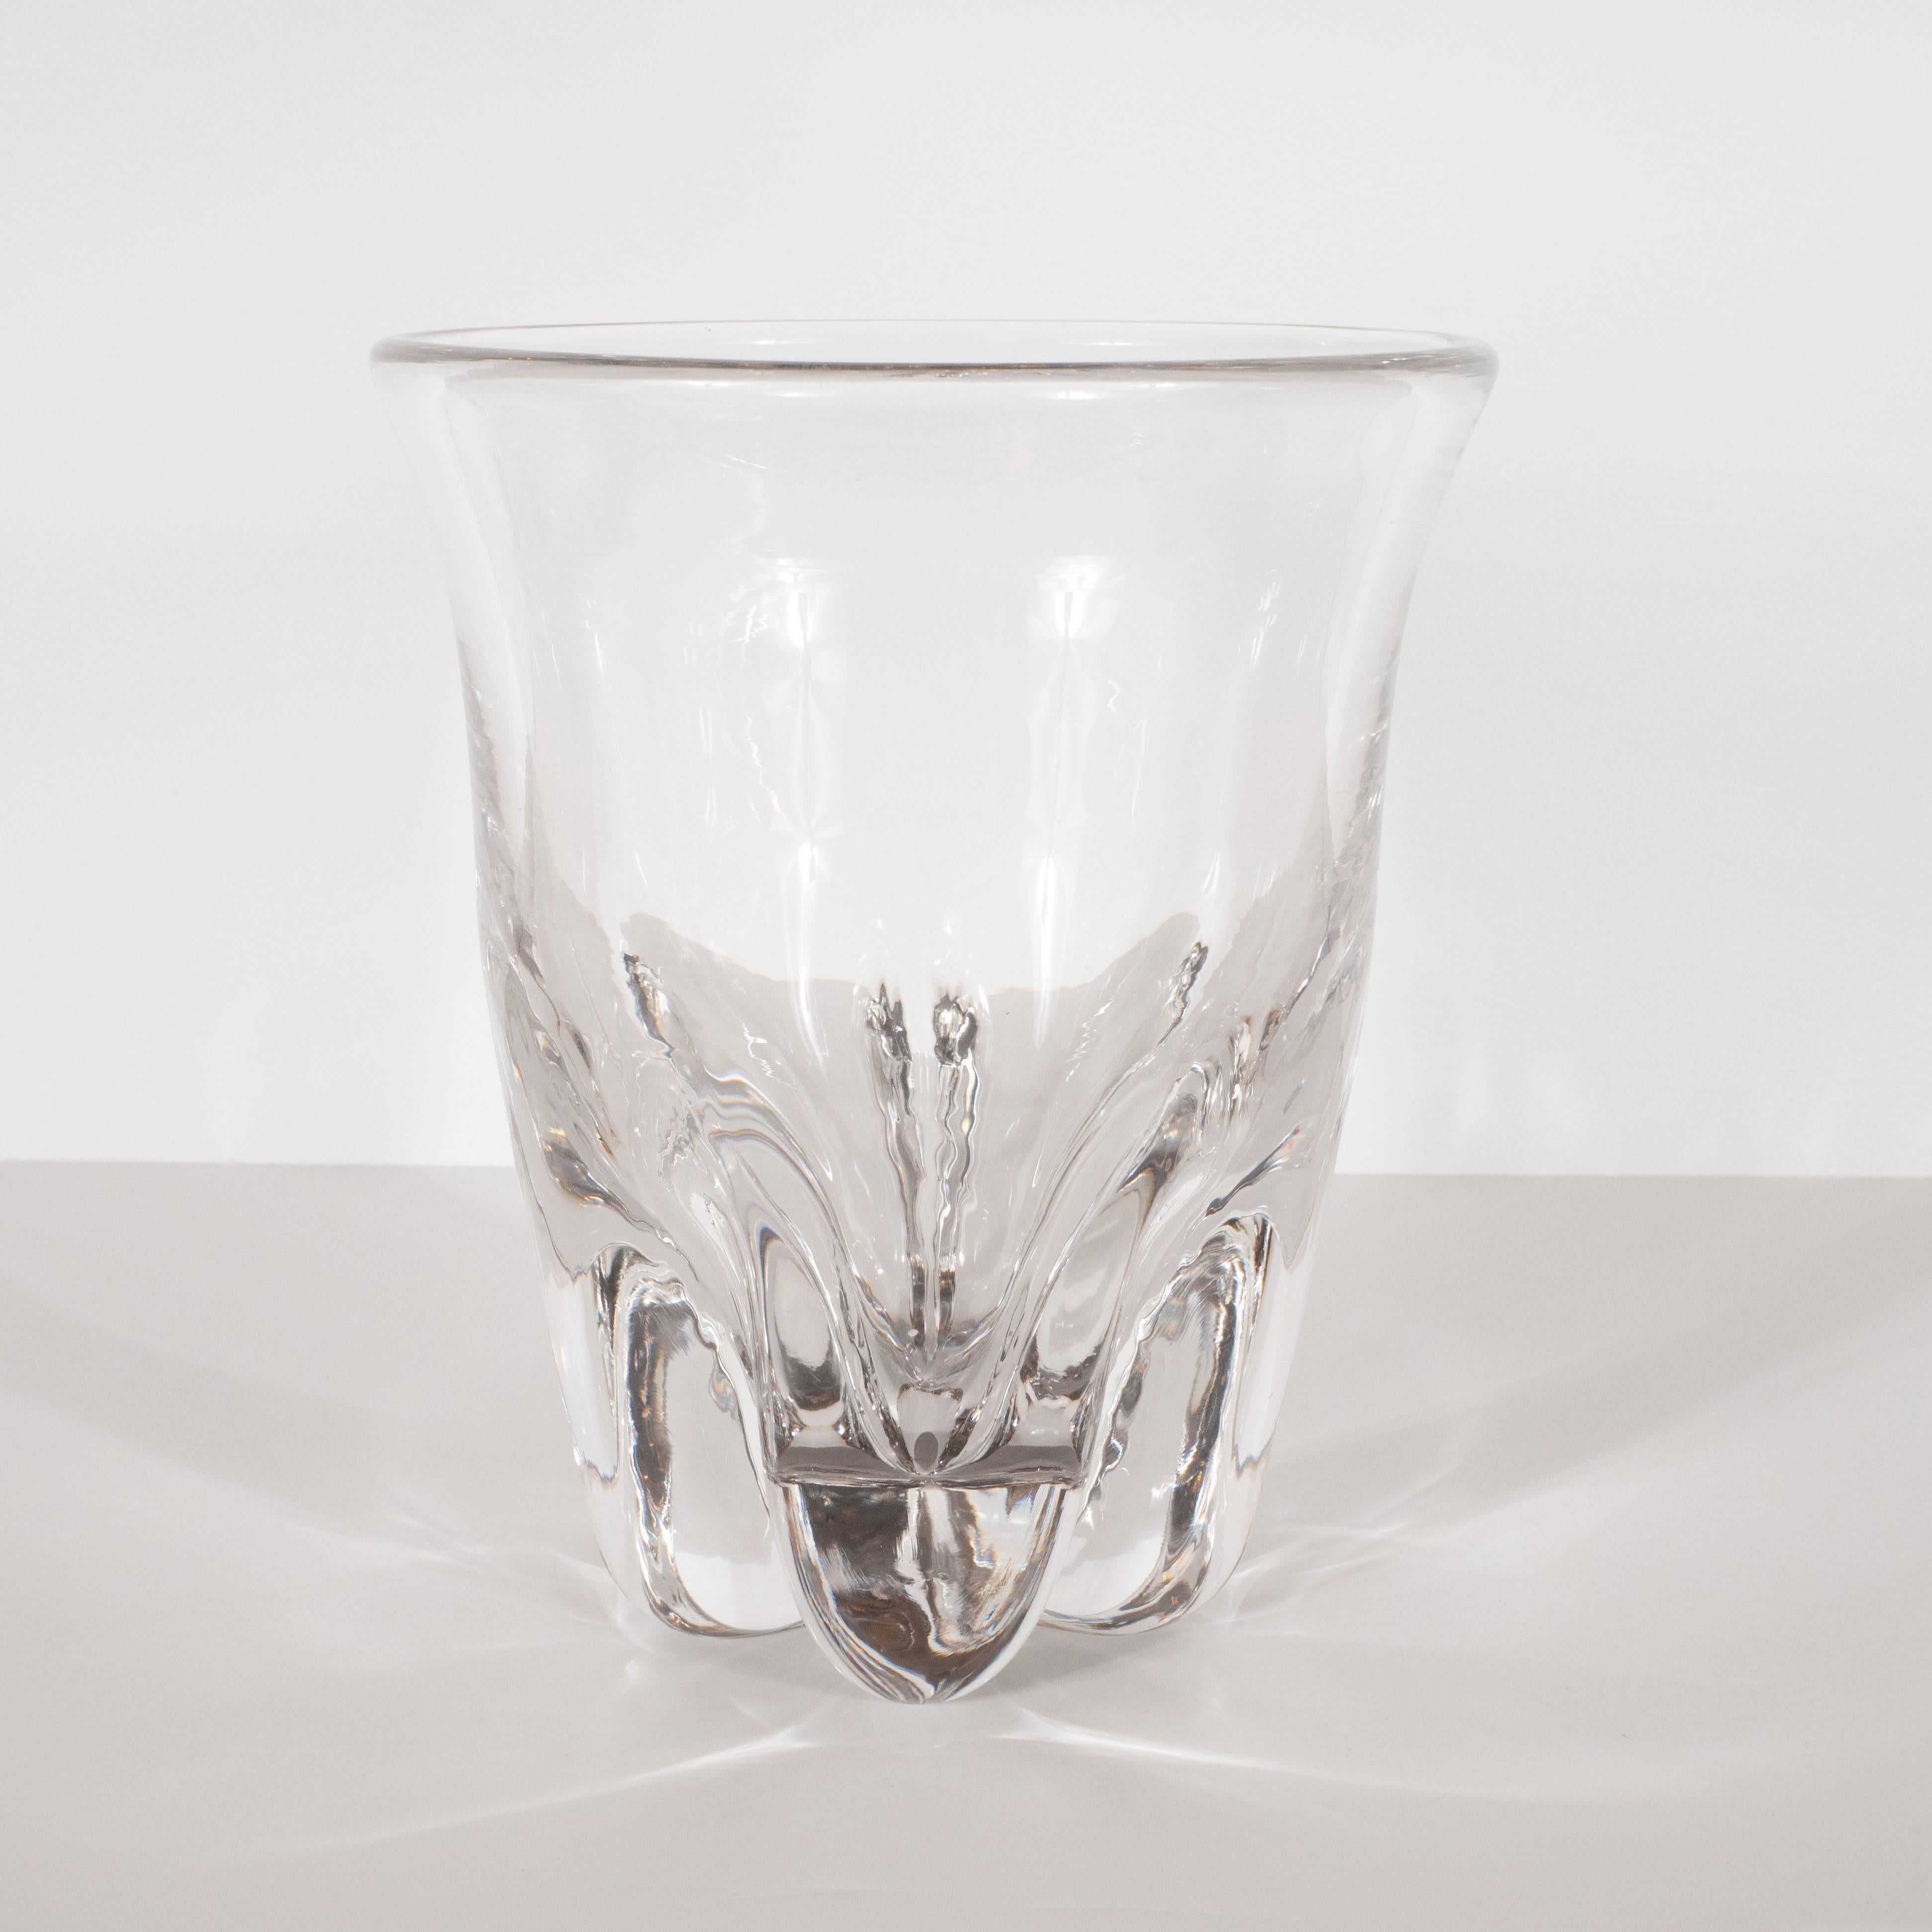 Ce vase en verre sculptural et dramatique de style moderne du milieu du siècle a été réalisé en Suède, vers 1960. Il comporte cinq pieds robustes en forme de goutte d'eau curviligne, séparés par des canaux profondément encastrés. Le corps